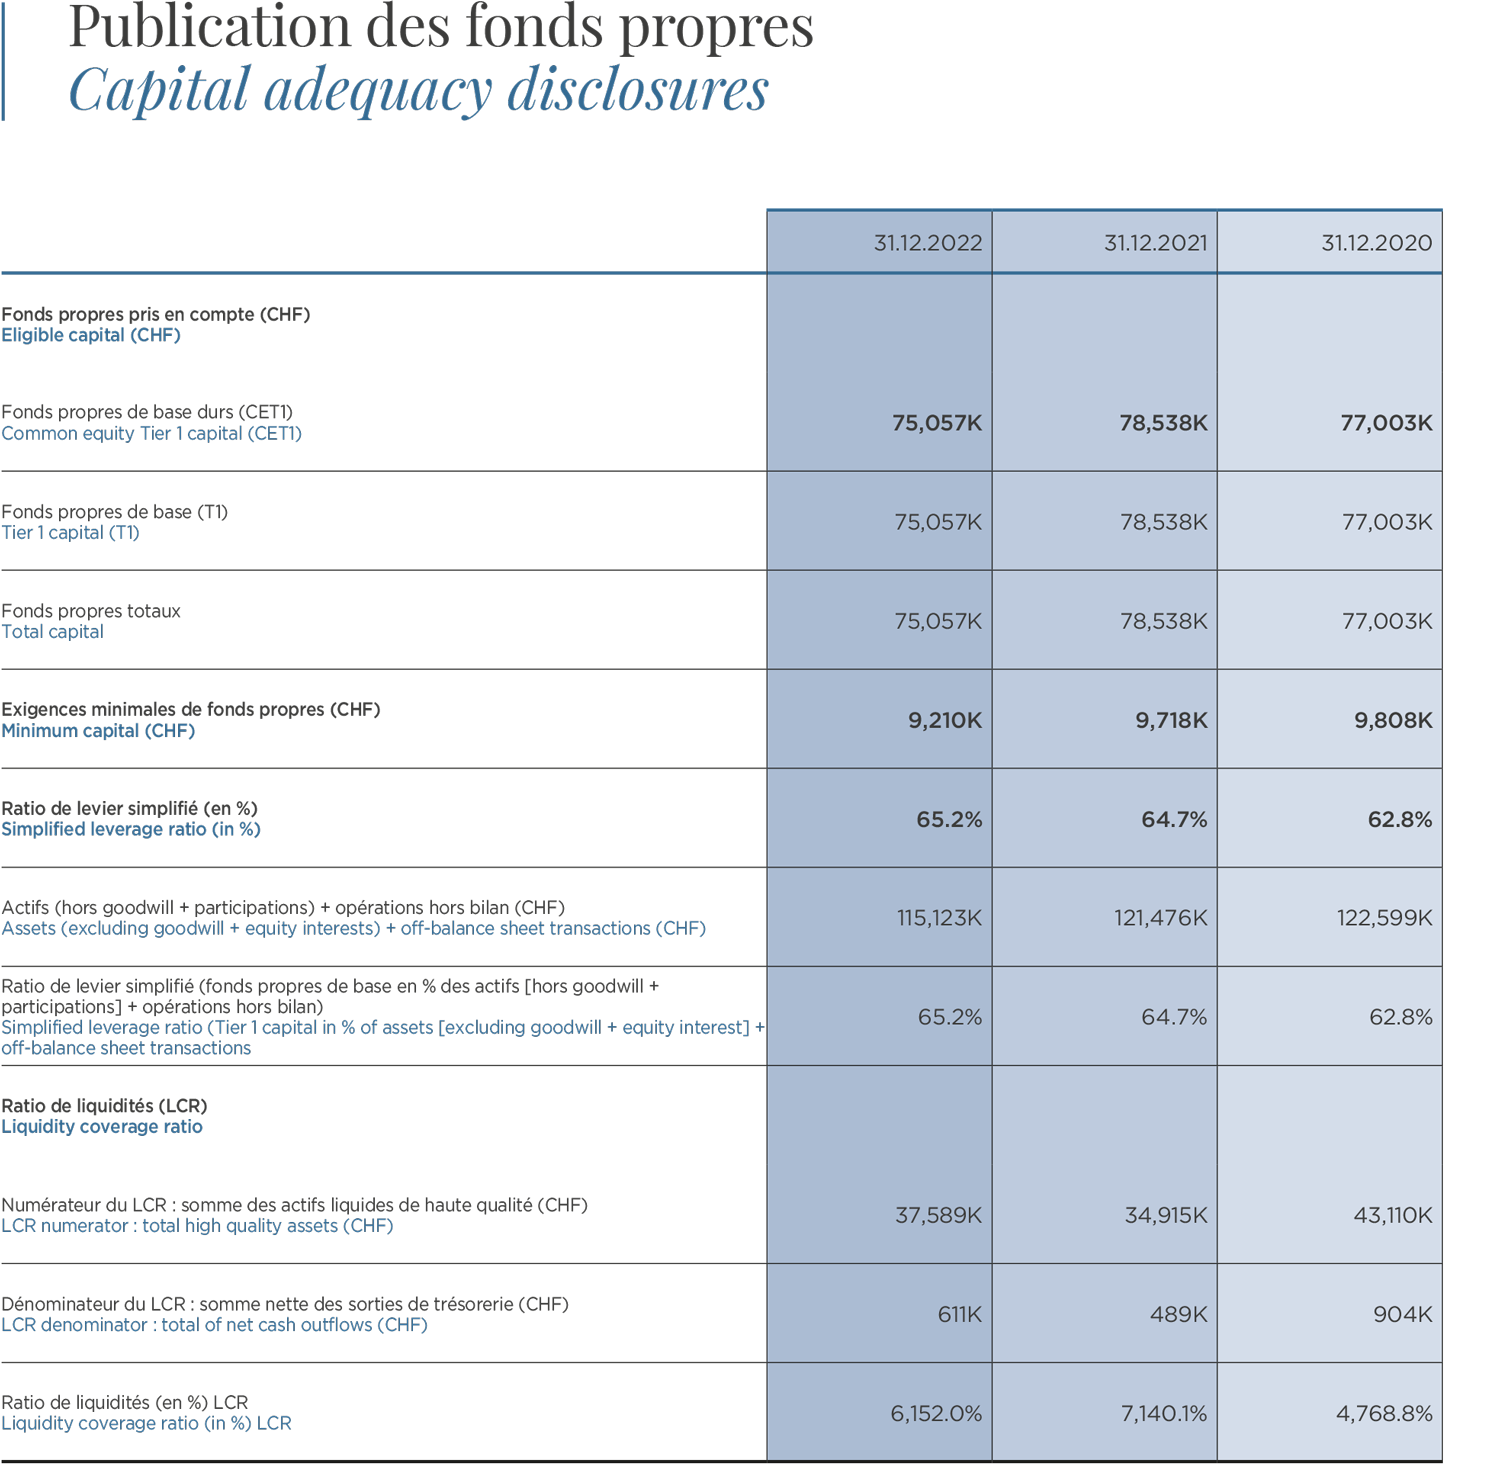 Publication des fonds propres / Capital adequacy disclosures